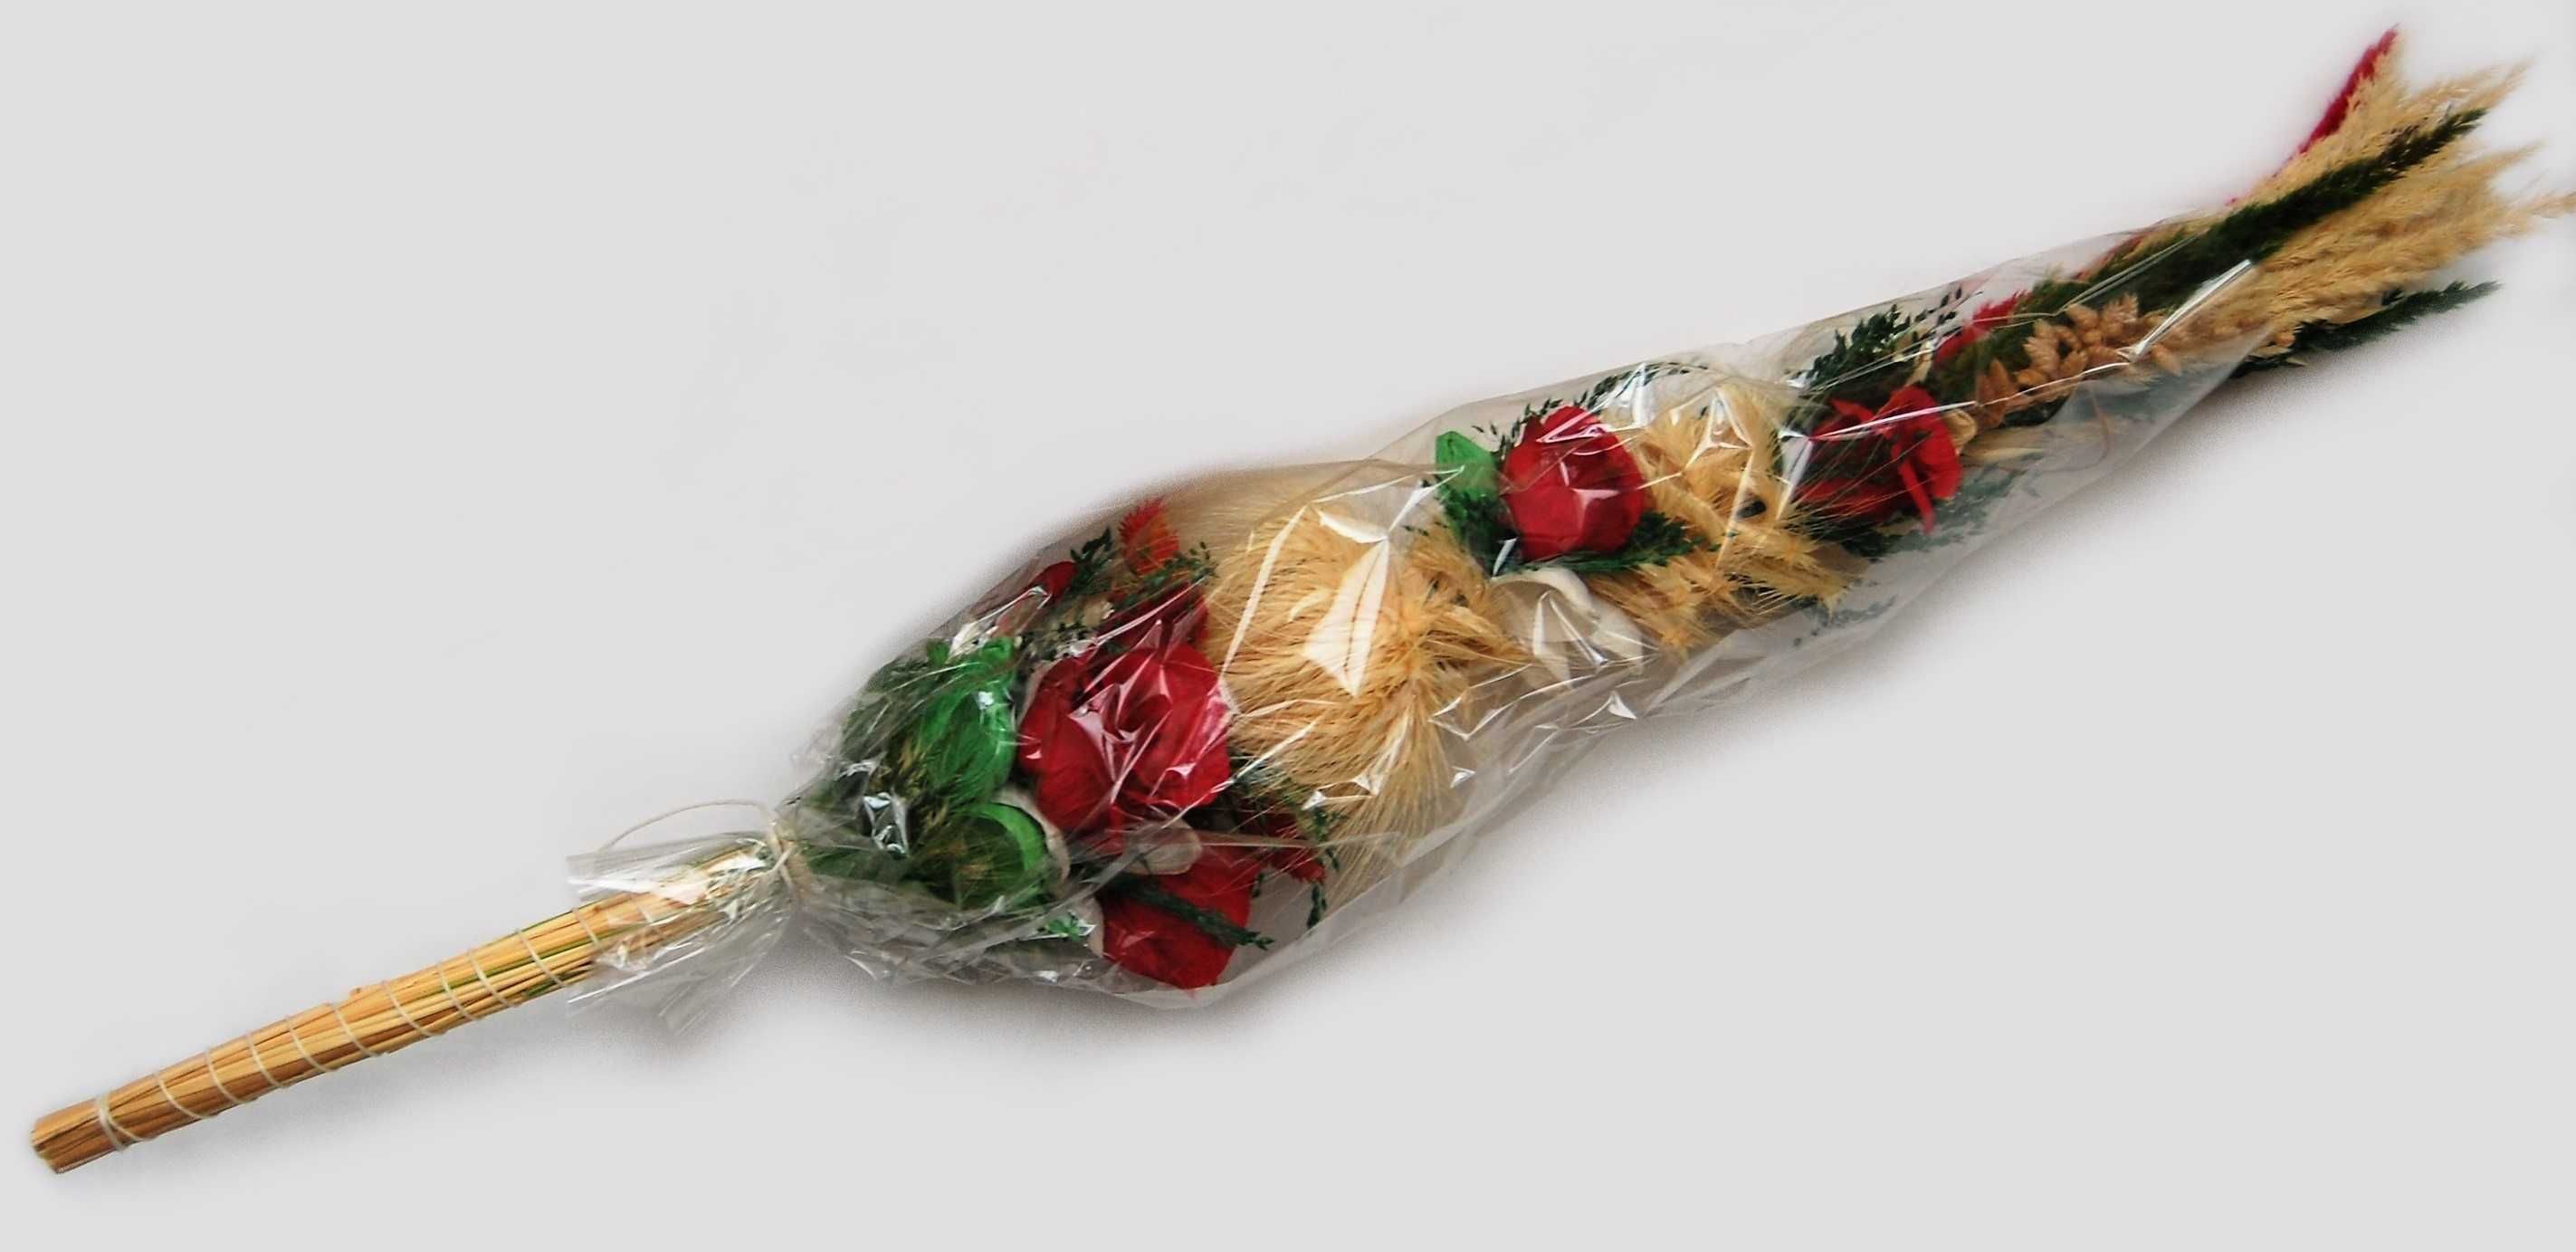 Palma wielkanocna tradycyjna,  czerwone róże, 85 cm